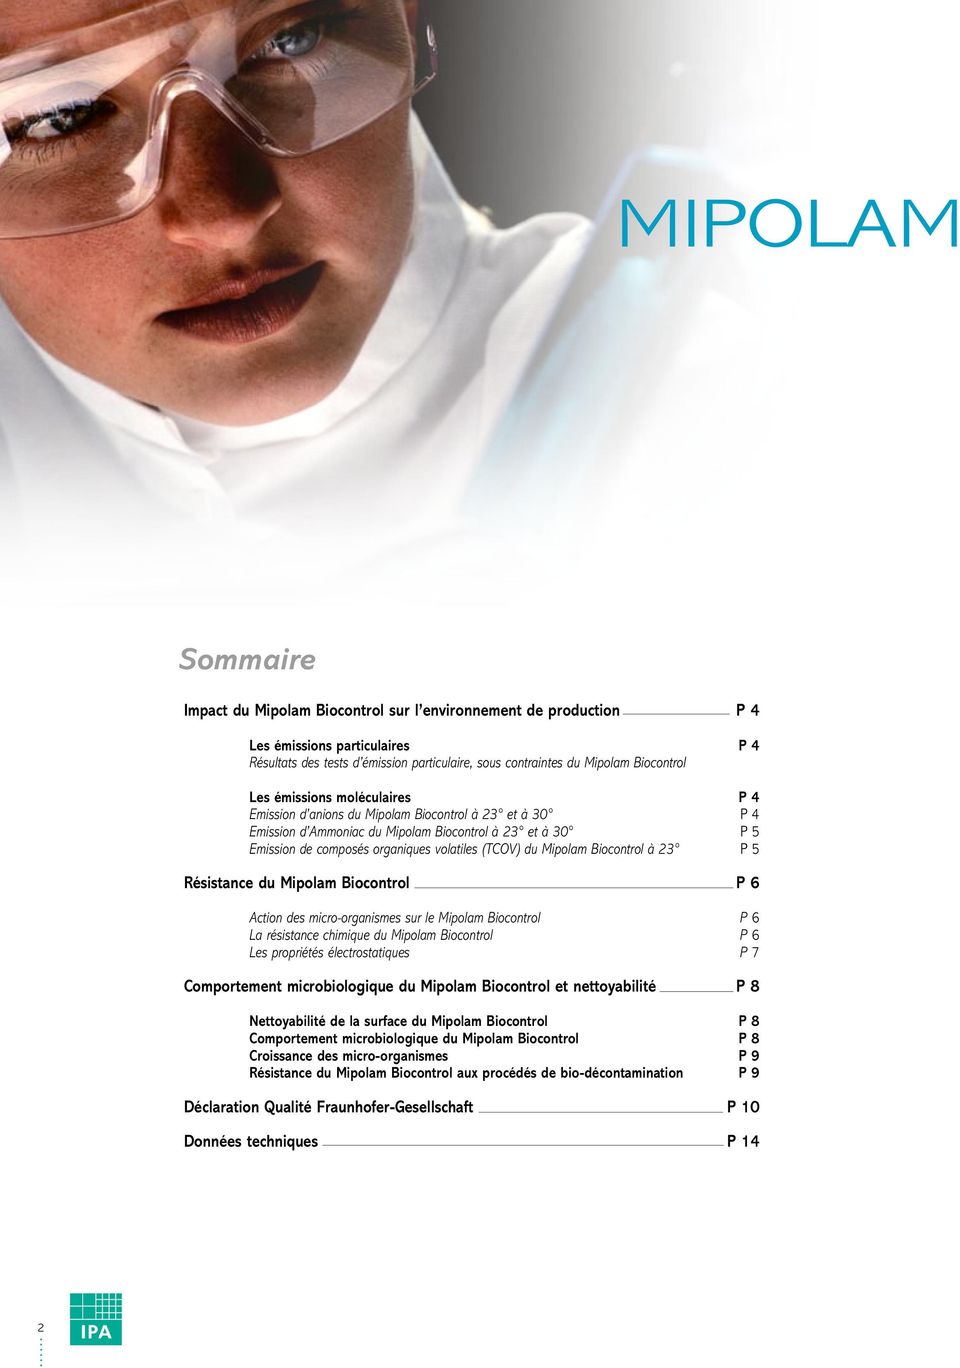 Mipolam Biocontrol à 23 P 5 Résistance du Mipolam Biocontrol P 6 Action des micro-organismes sur le Mipolam Biocontrol P 6 La résistance chimique du Mipolam Biocontrol P 6 Les propriétés